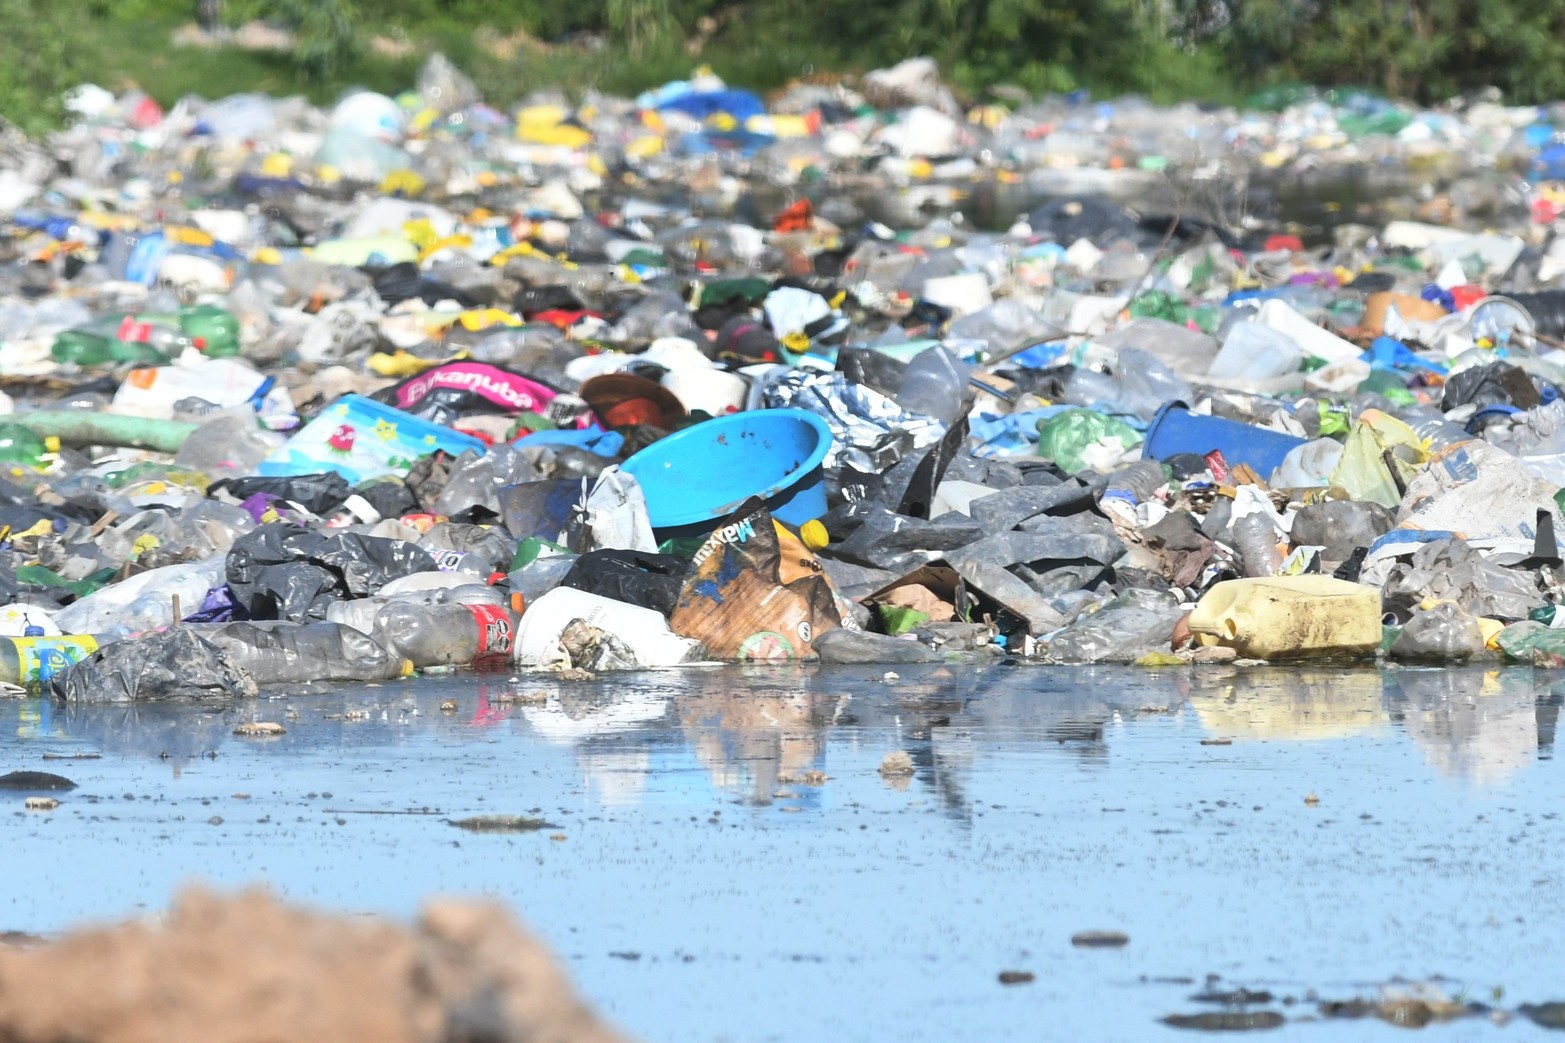 Inundado. El basural de callejón Pinto lleno de basura y agua del bañado de la Setúbal.